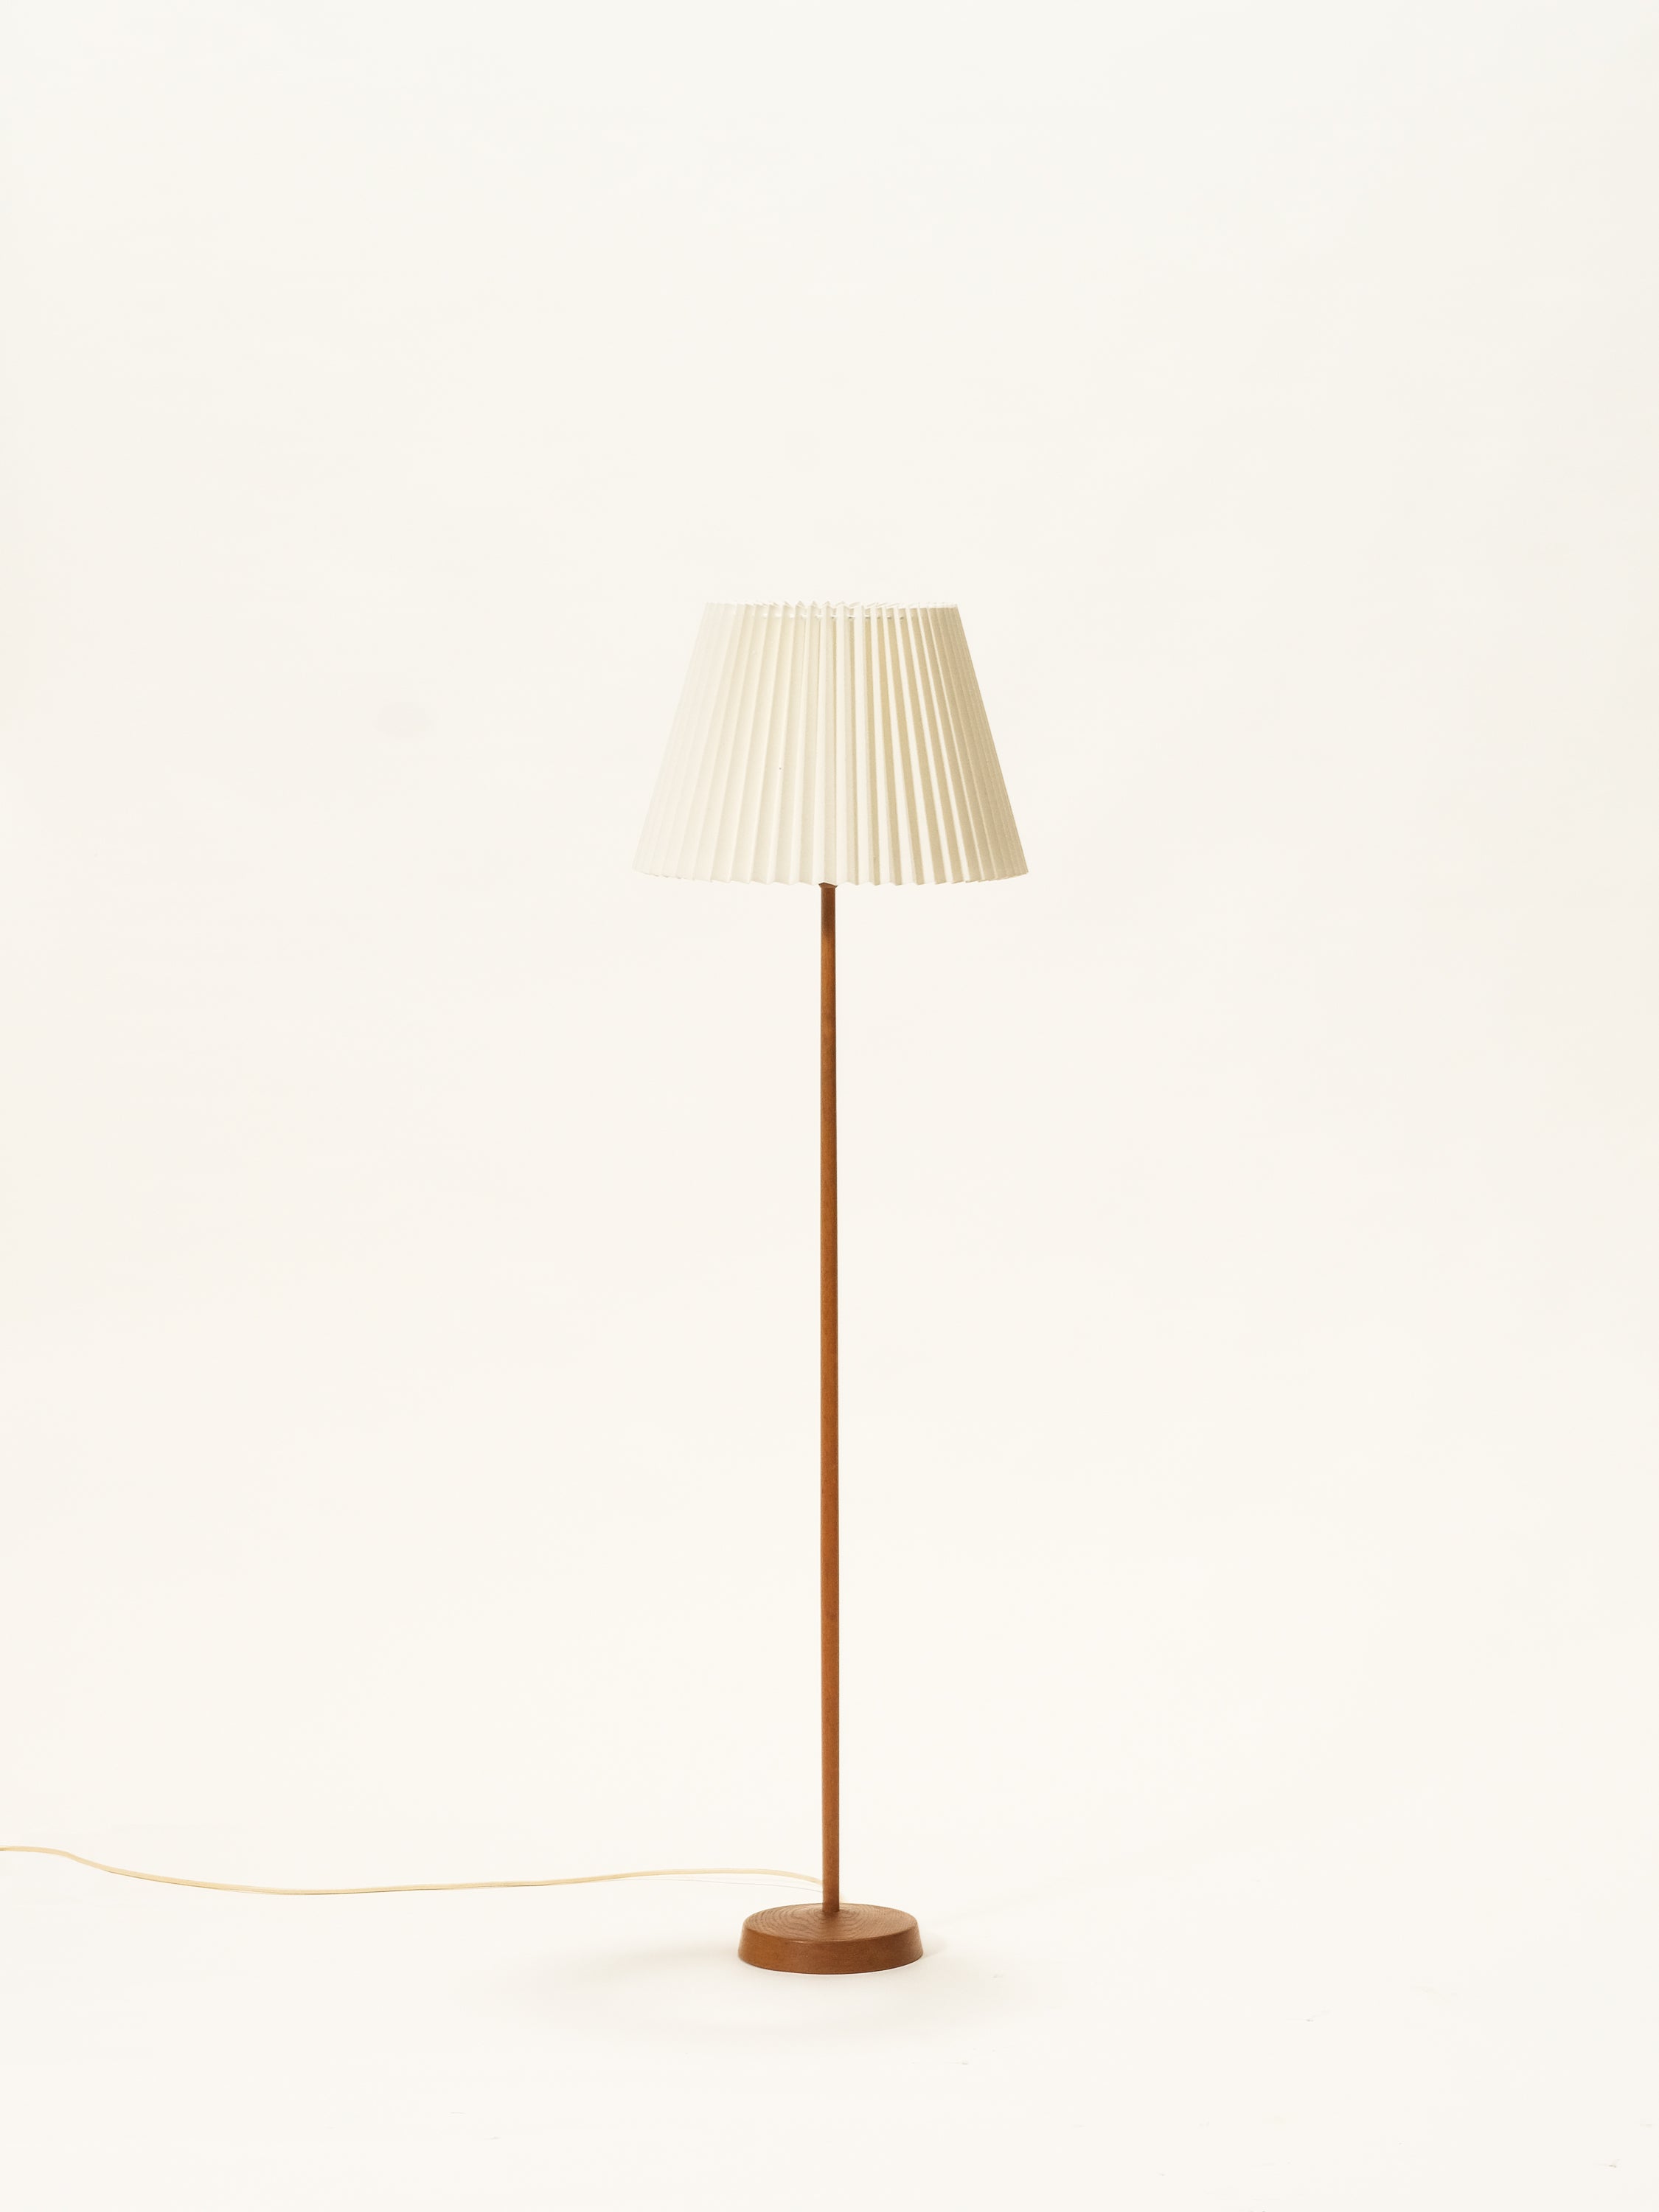 Oak Floor Lamp by Uno & Östen Kristiansson for Luxus, Sweden, 1960s